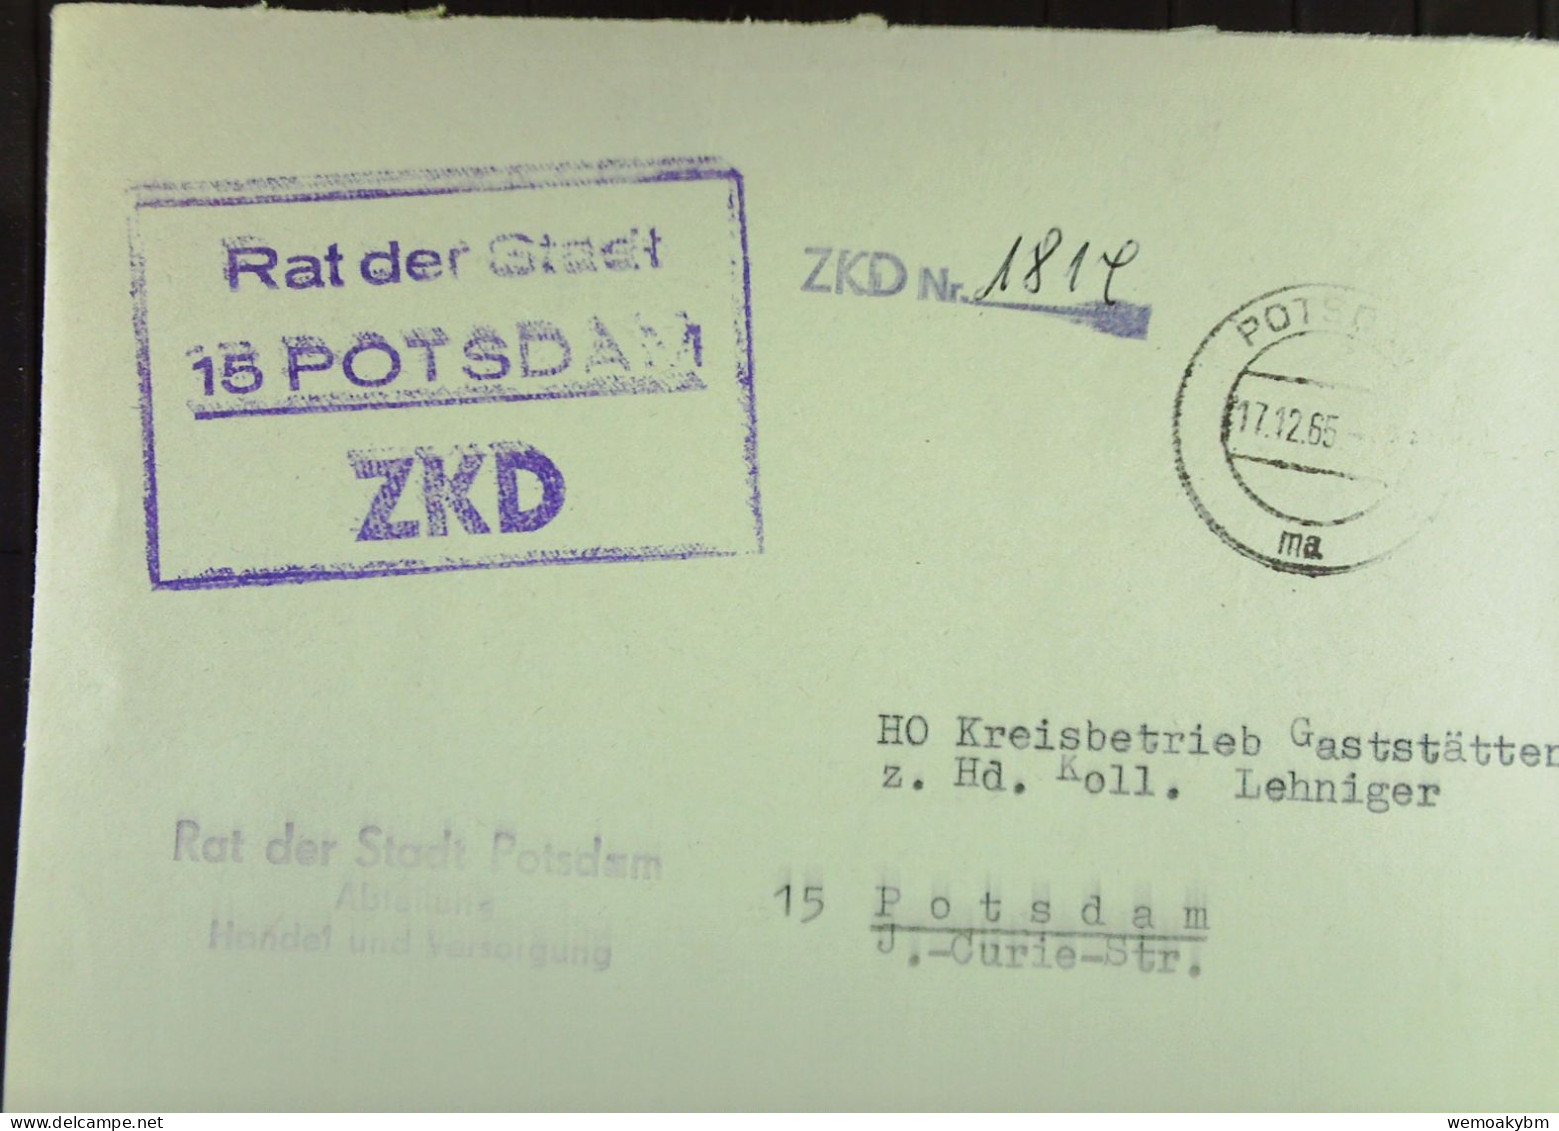 DIENST-Brief Mit ZKD-Kastenst, "Rat Der Stadt 15 POTSDAM" V17.12.65 An HO Kreisbetrieb Gaststäten Potsdam -ZKD-Nr. 1814 - Storia Postale